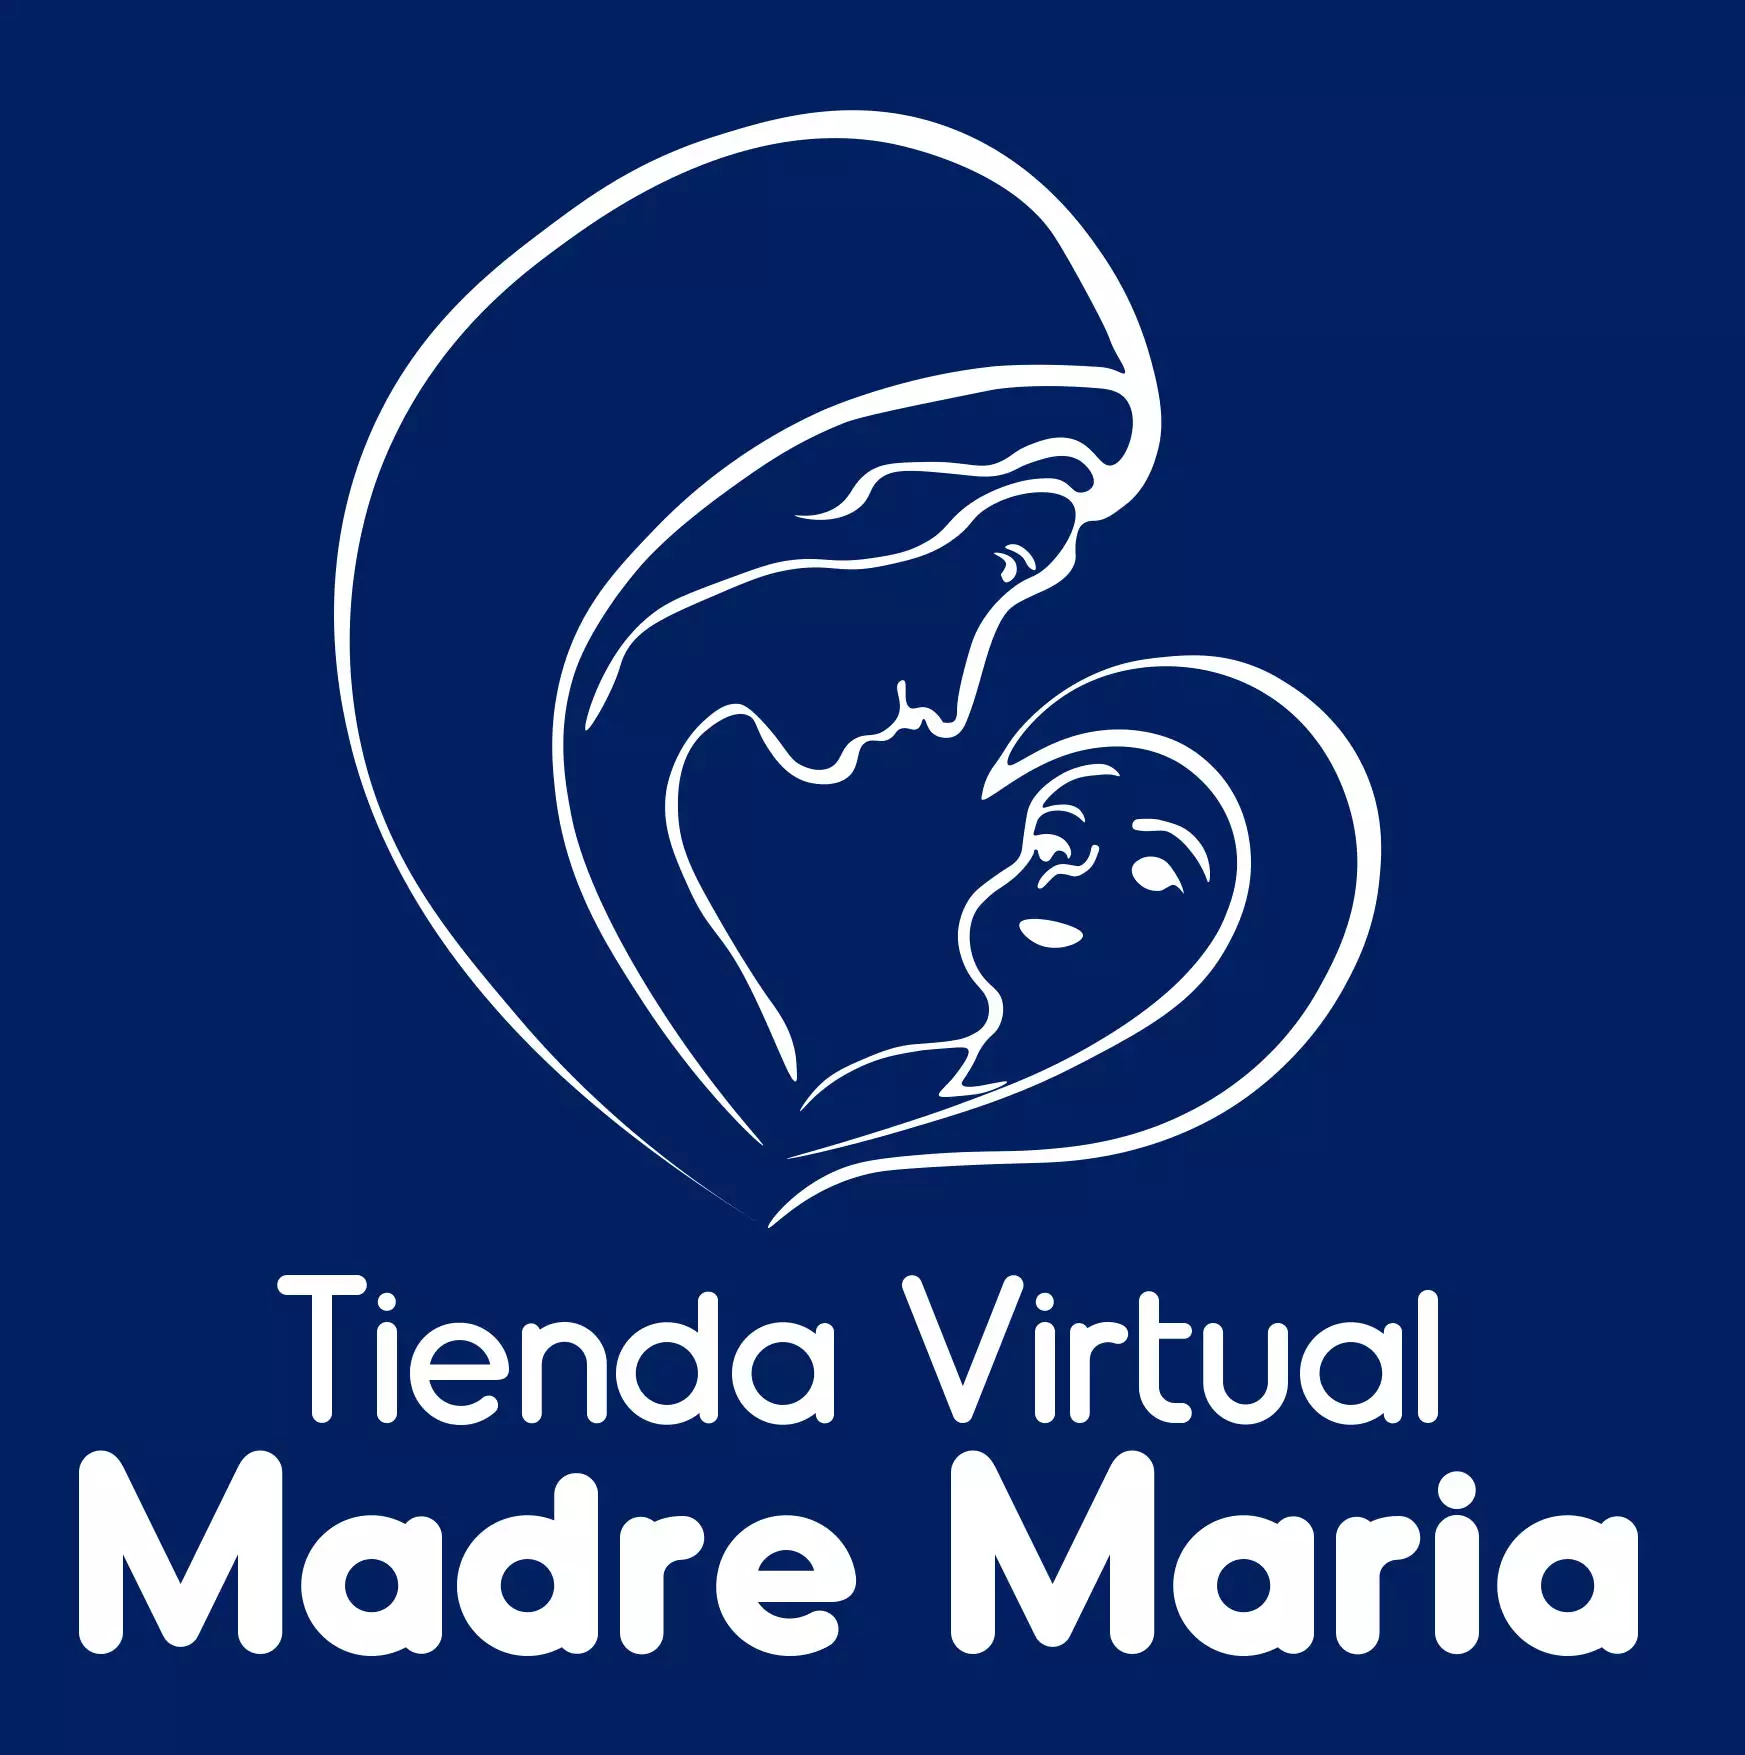 Tienda Virtual Madre María